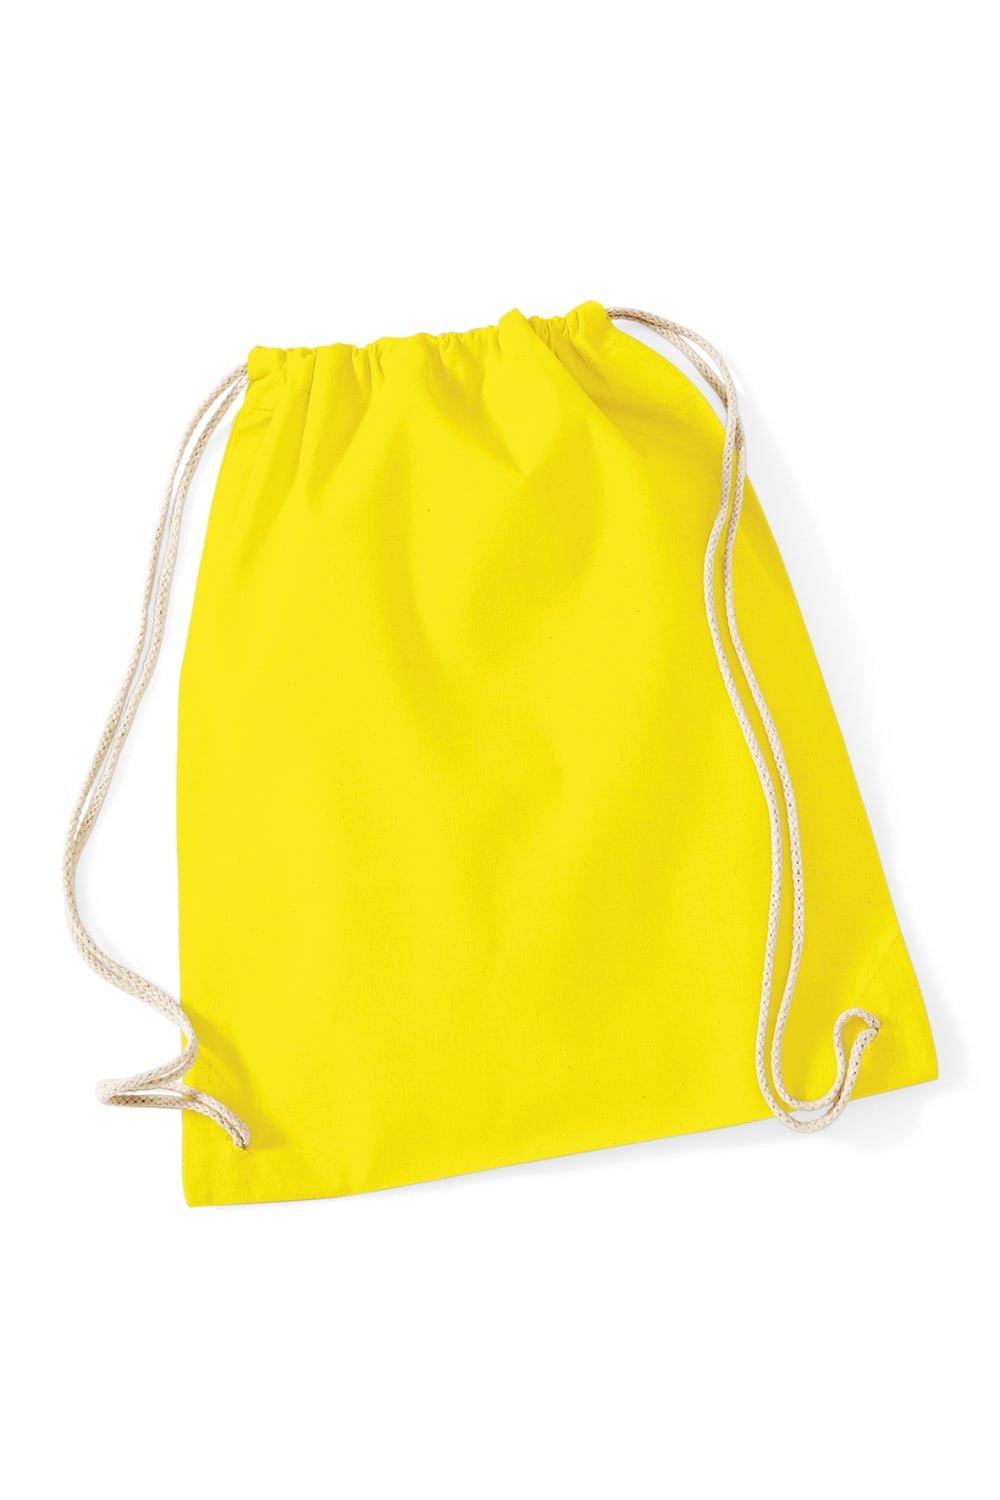 Хлопковая сумка Gymsac - 12 литров Westford Mill, желтый